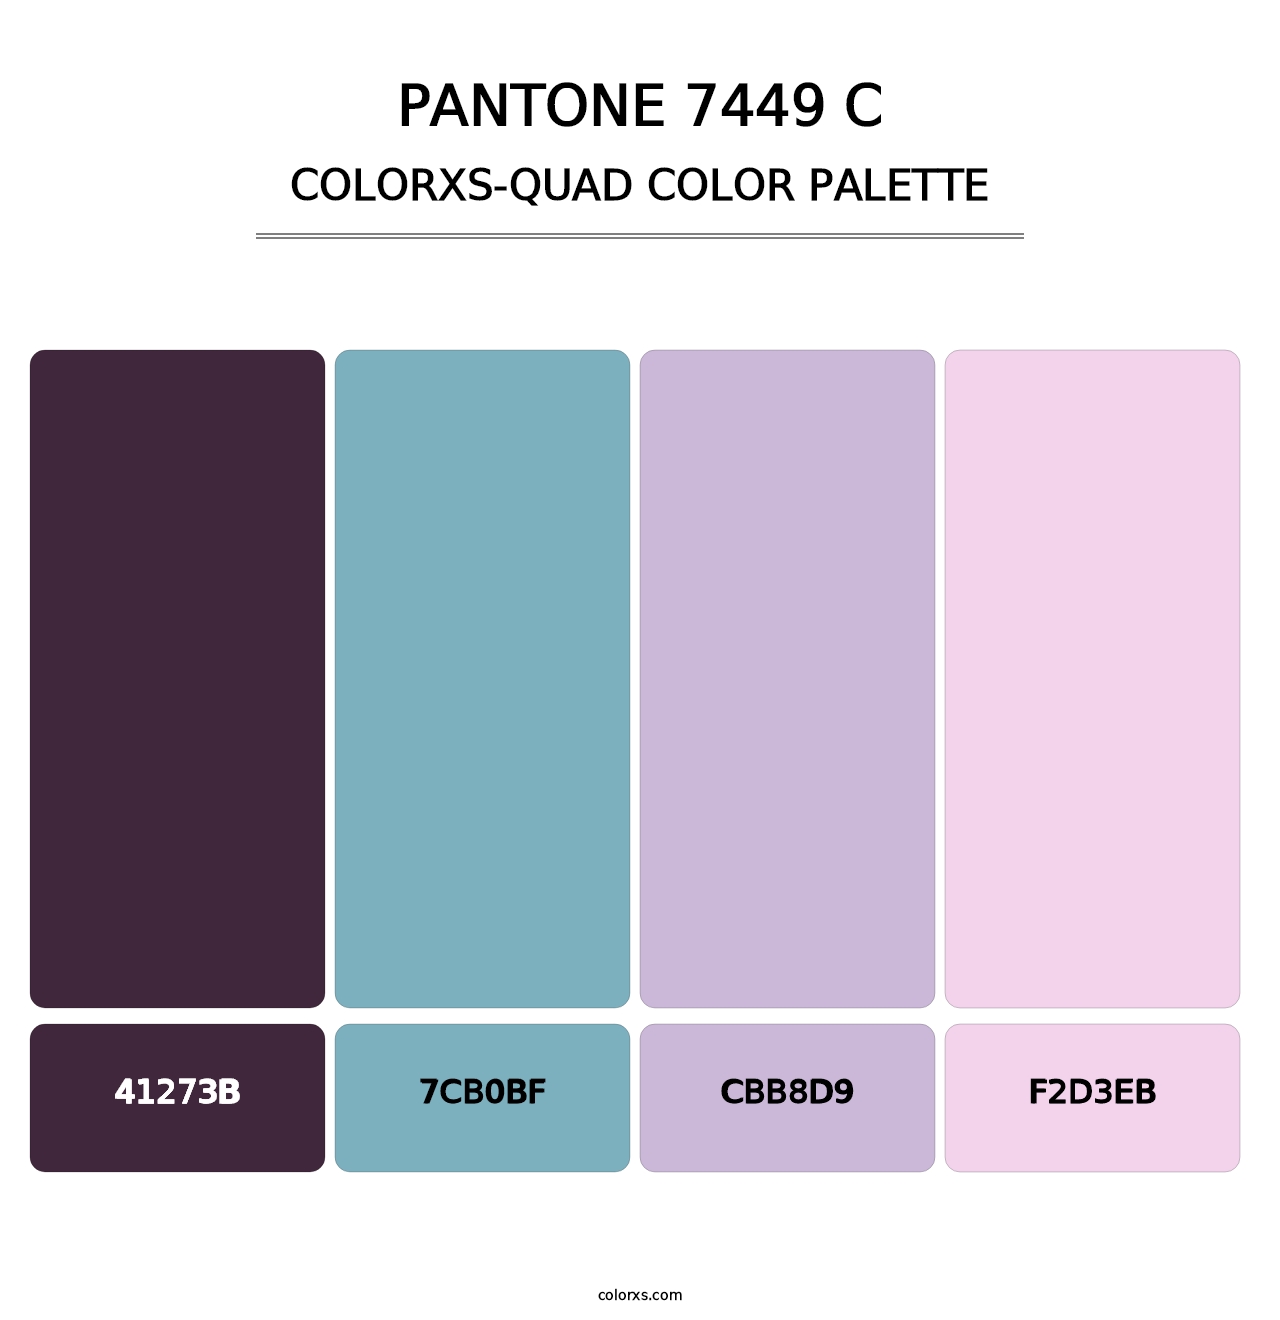 PANTONE 7449 C - Colorxs Quad Palette